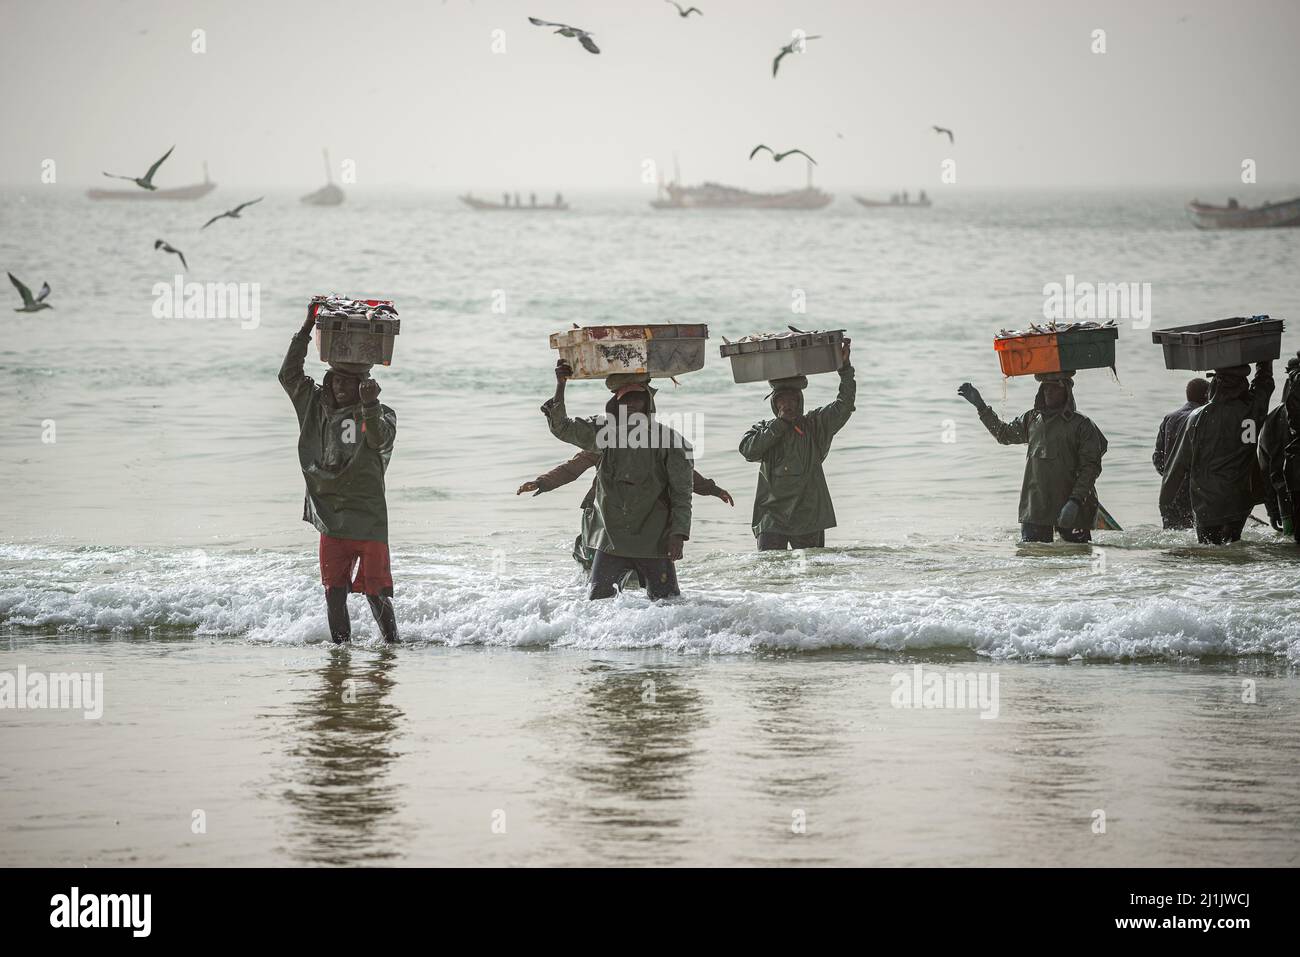 Travailleurs africains noirs qui téléchargent des poissons des bateaux de pêche, marché aux poissons de Nouakchott, Mauritanie Banque D'Images